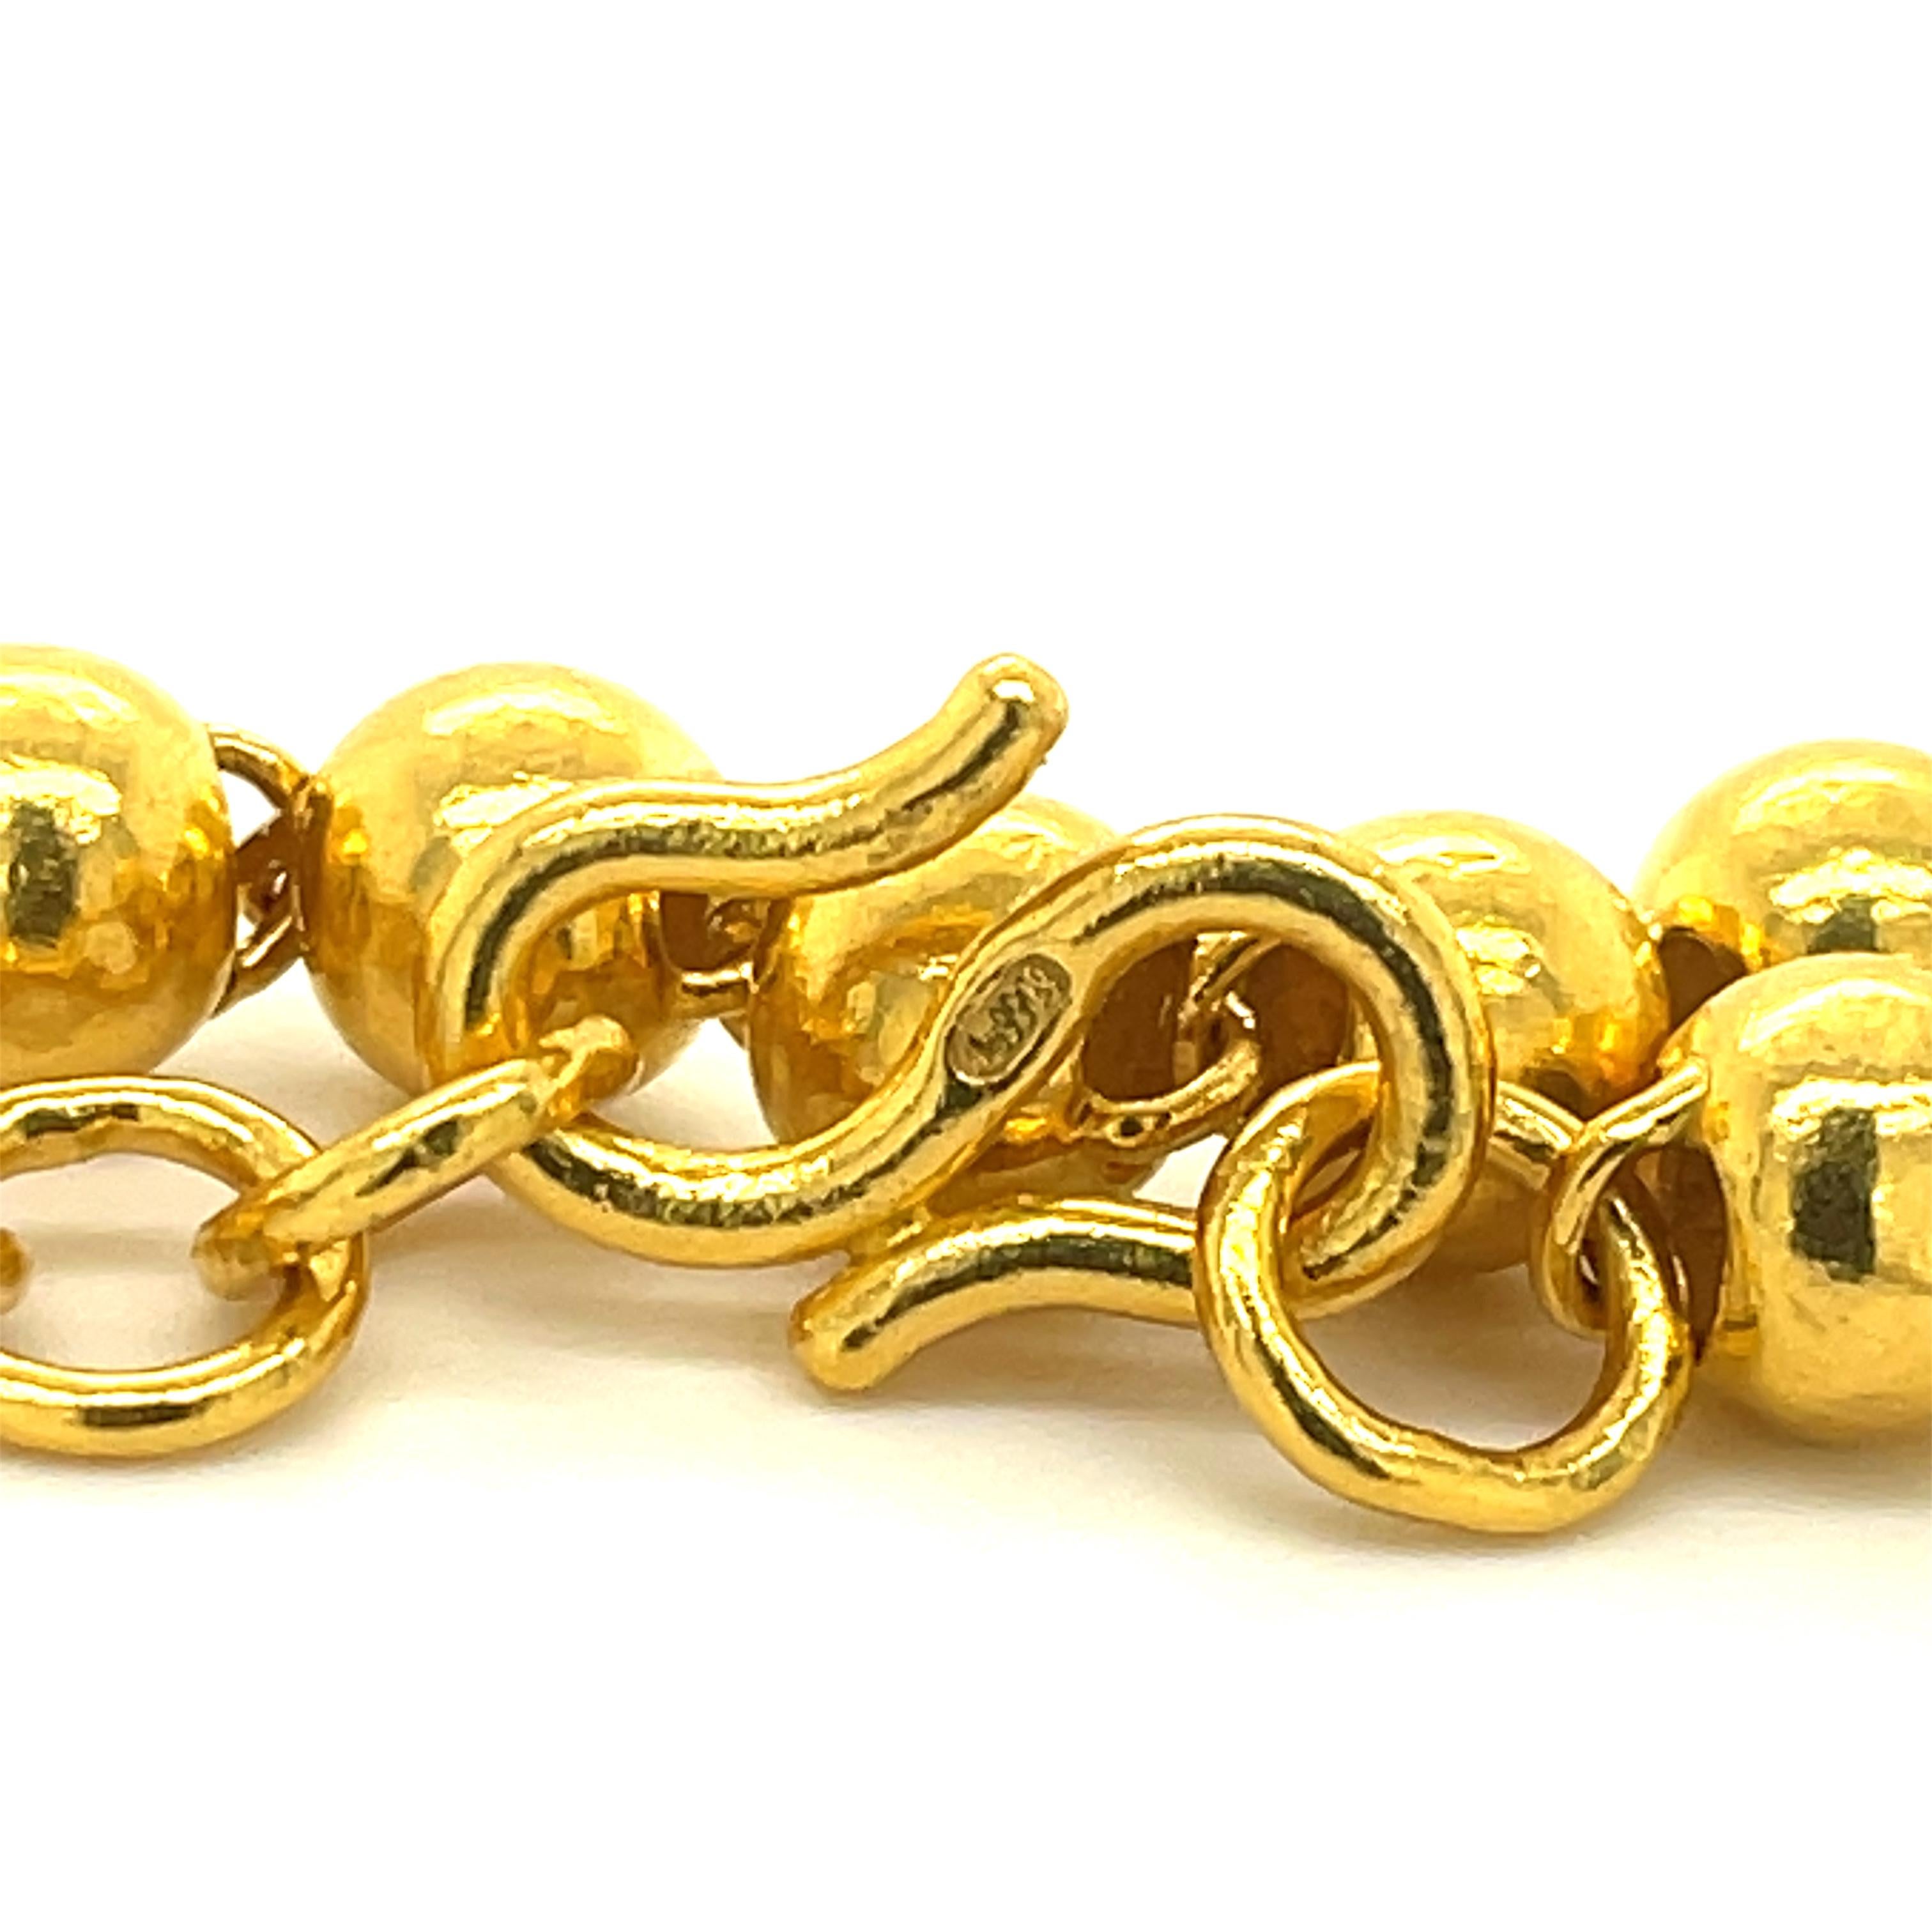 24K Gold Bead Bracelet.
8